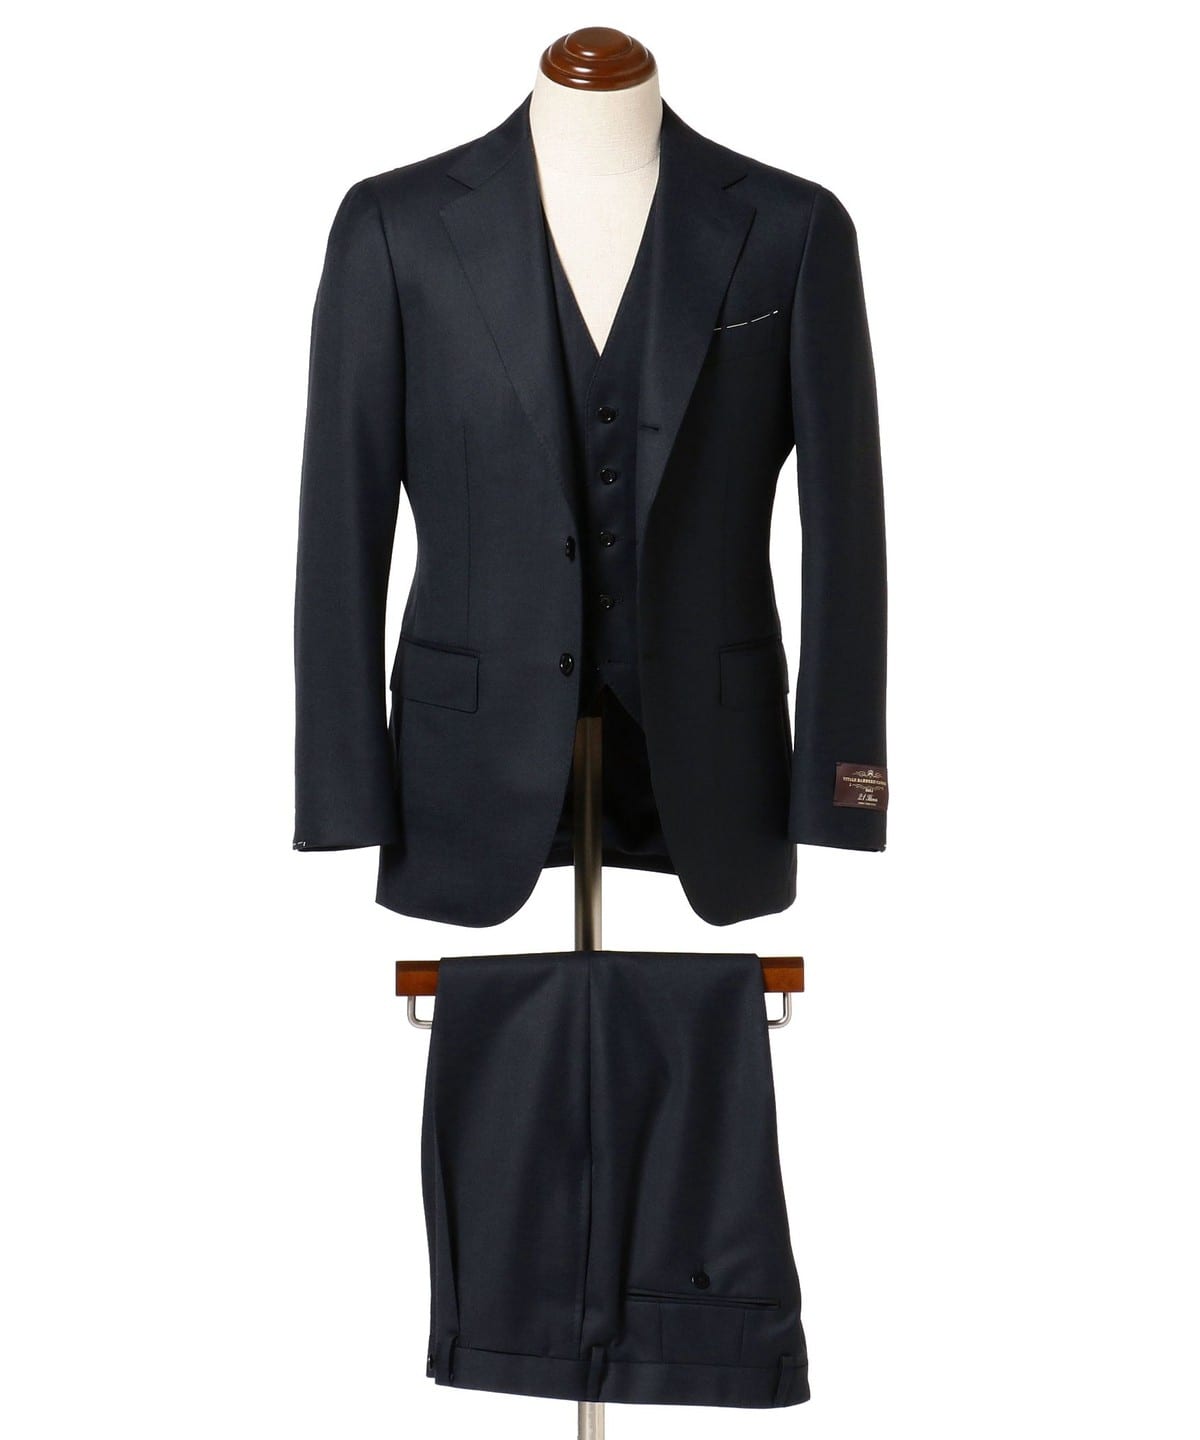 ビームスＦ ネイビー サージ 3ボタンスーツ 97 M～L 日本製 ネクタイ付